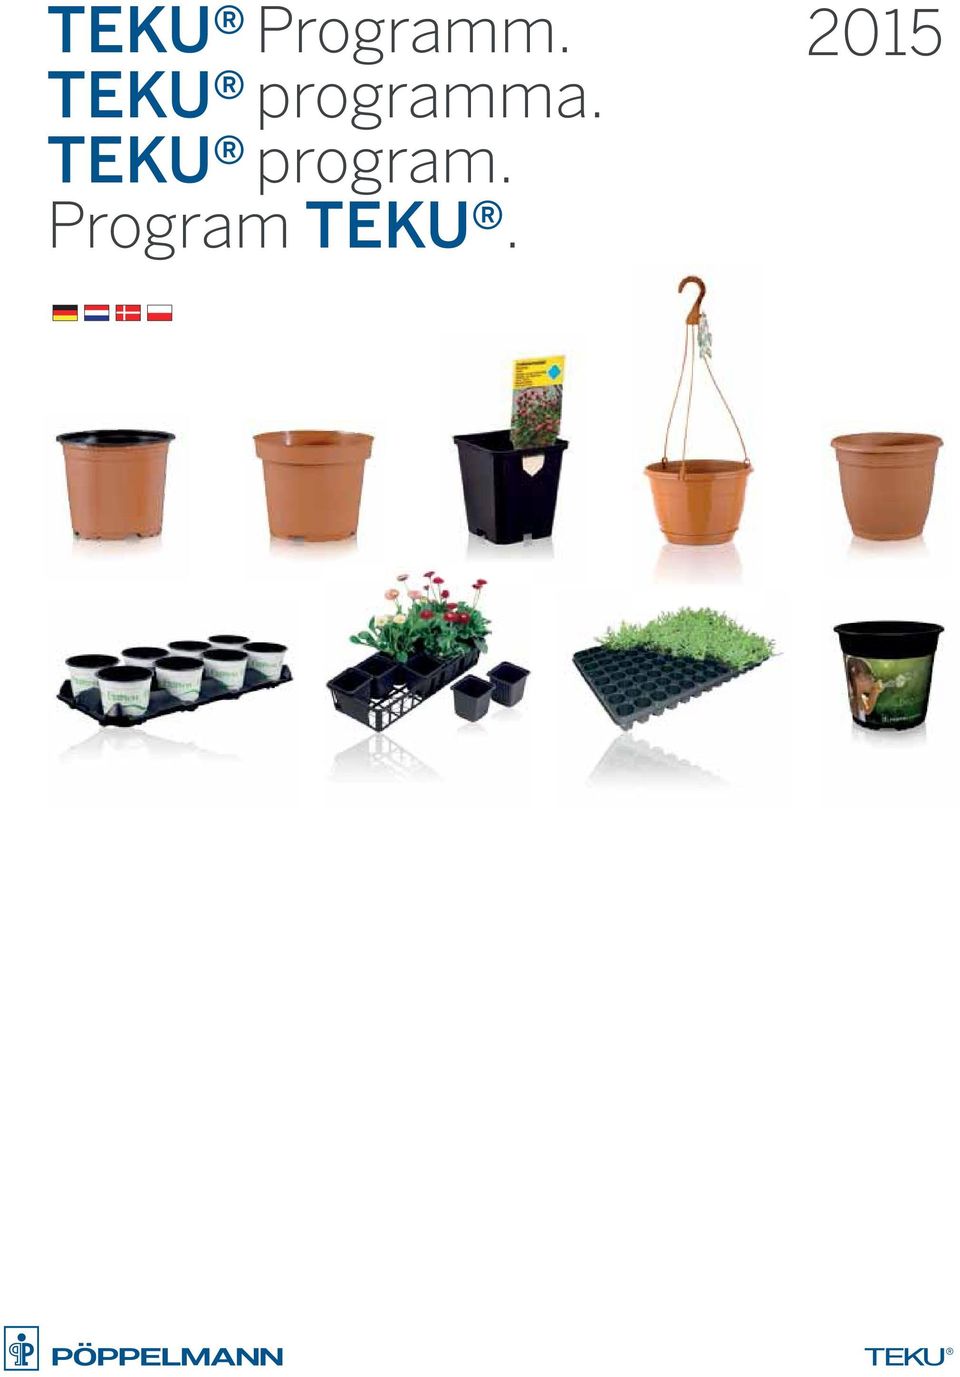 TEKU program.